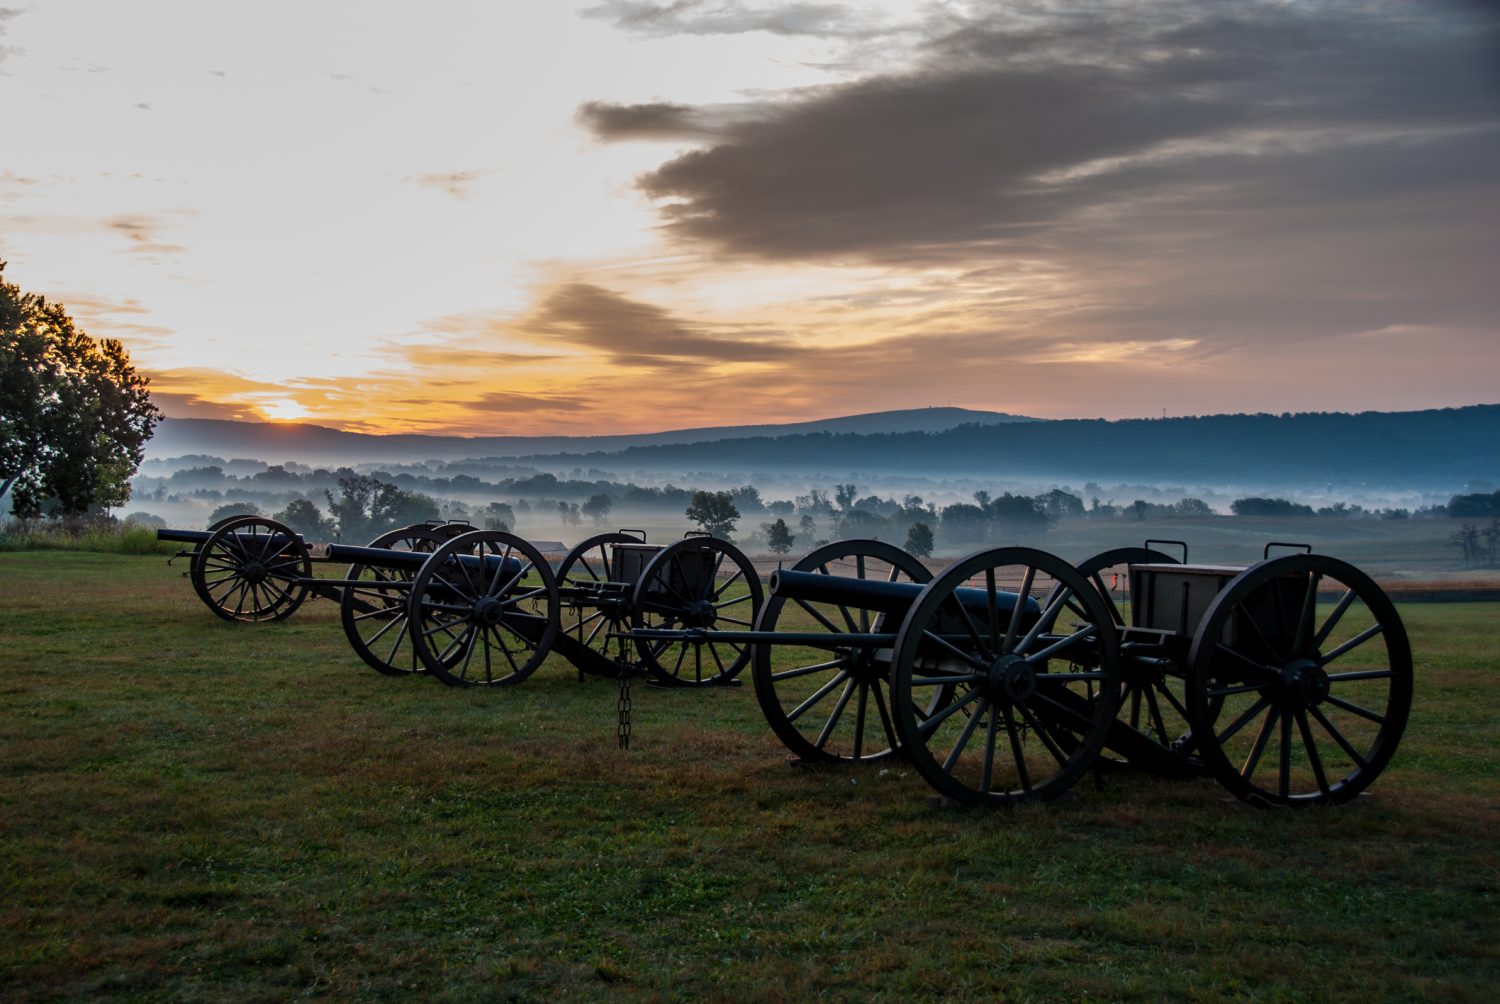 Sunrise over Antietam civil war era cannons